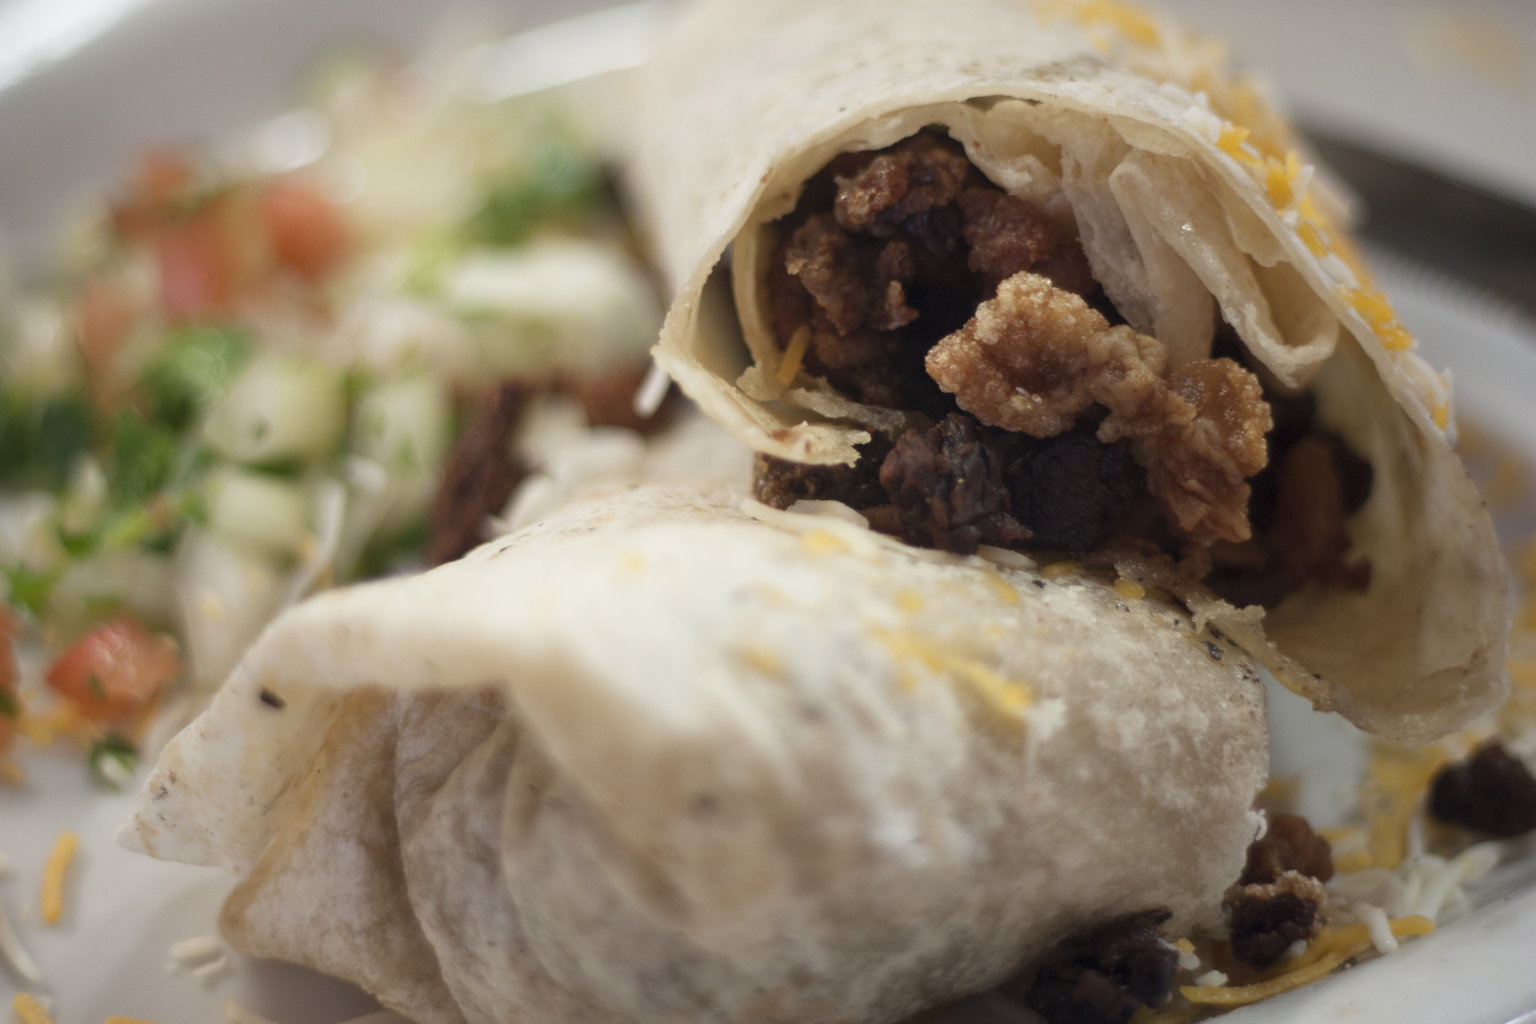 Burrito bucket list: Chicharron Burrito at El Sur (Credit: Jackie Tran)